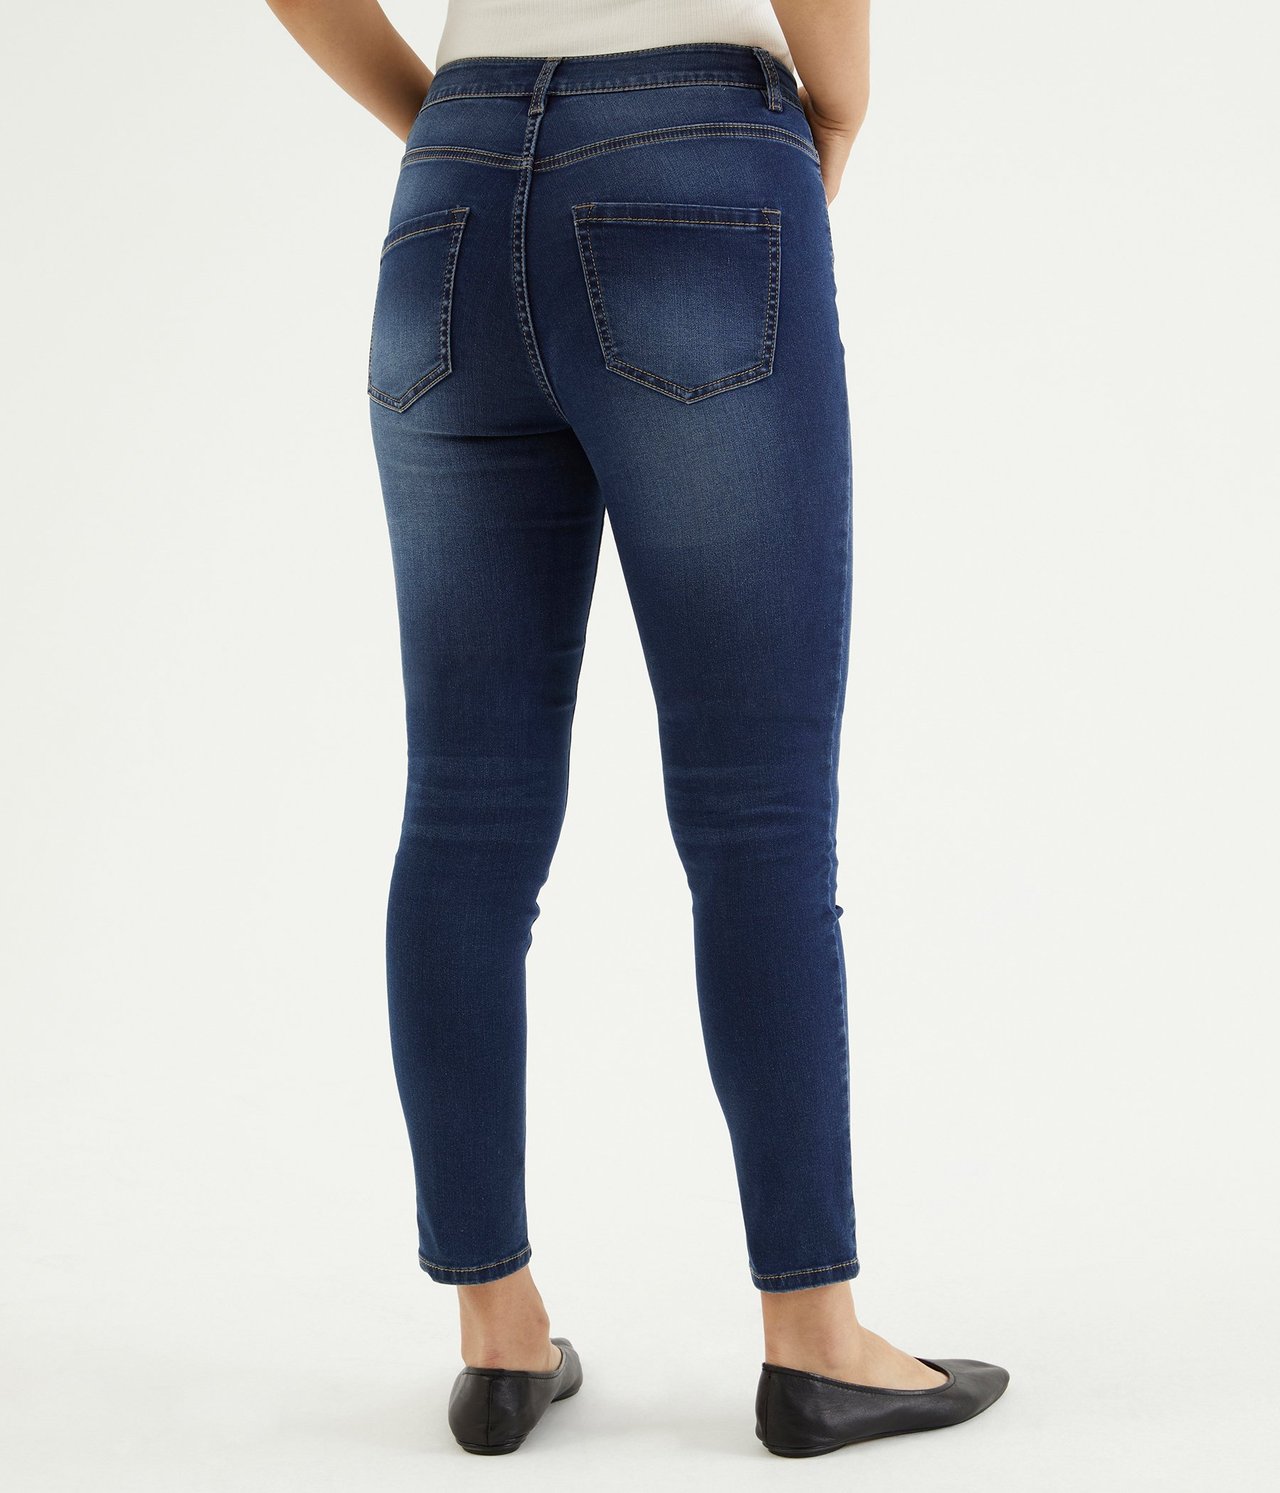 Super slim jeans short leg Mörk denim - null - 0